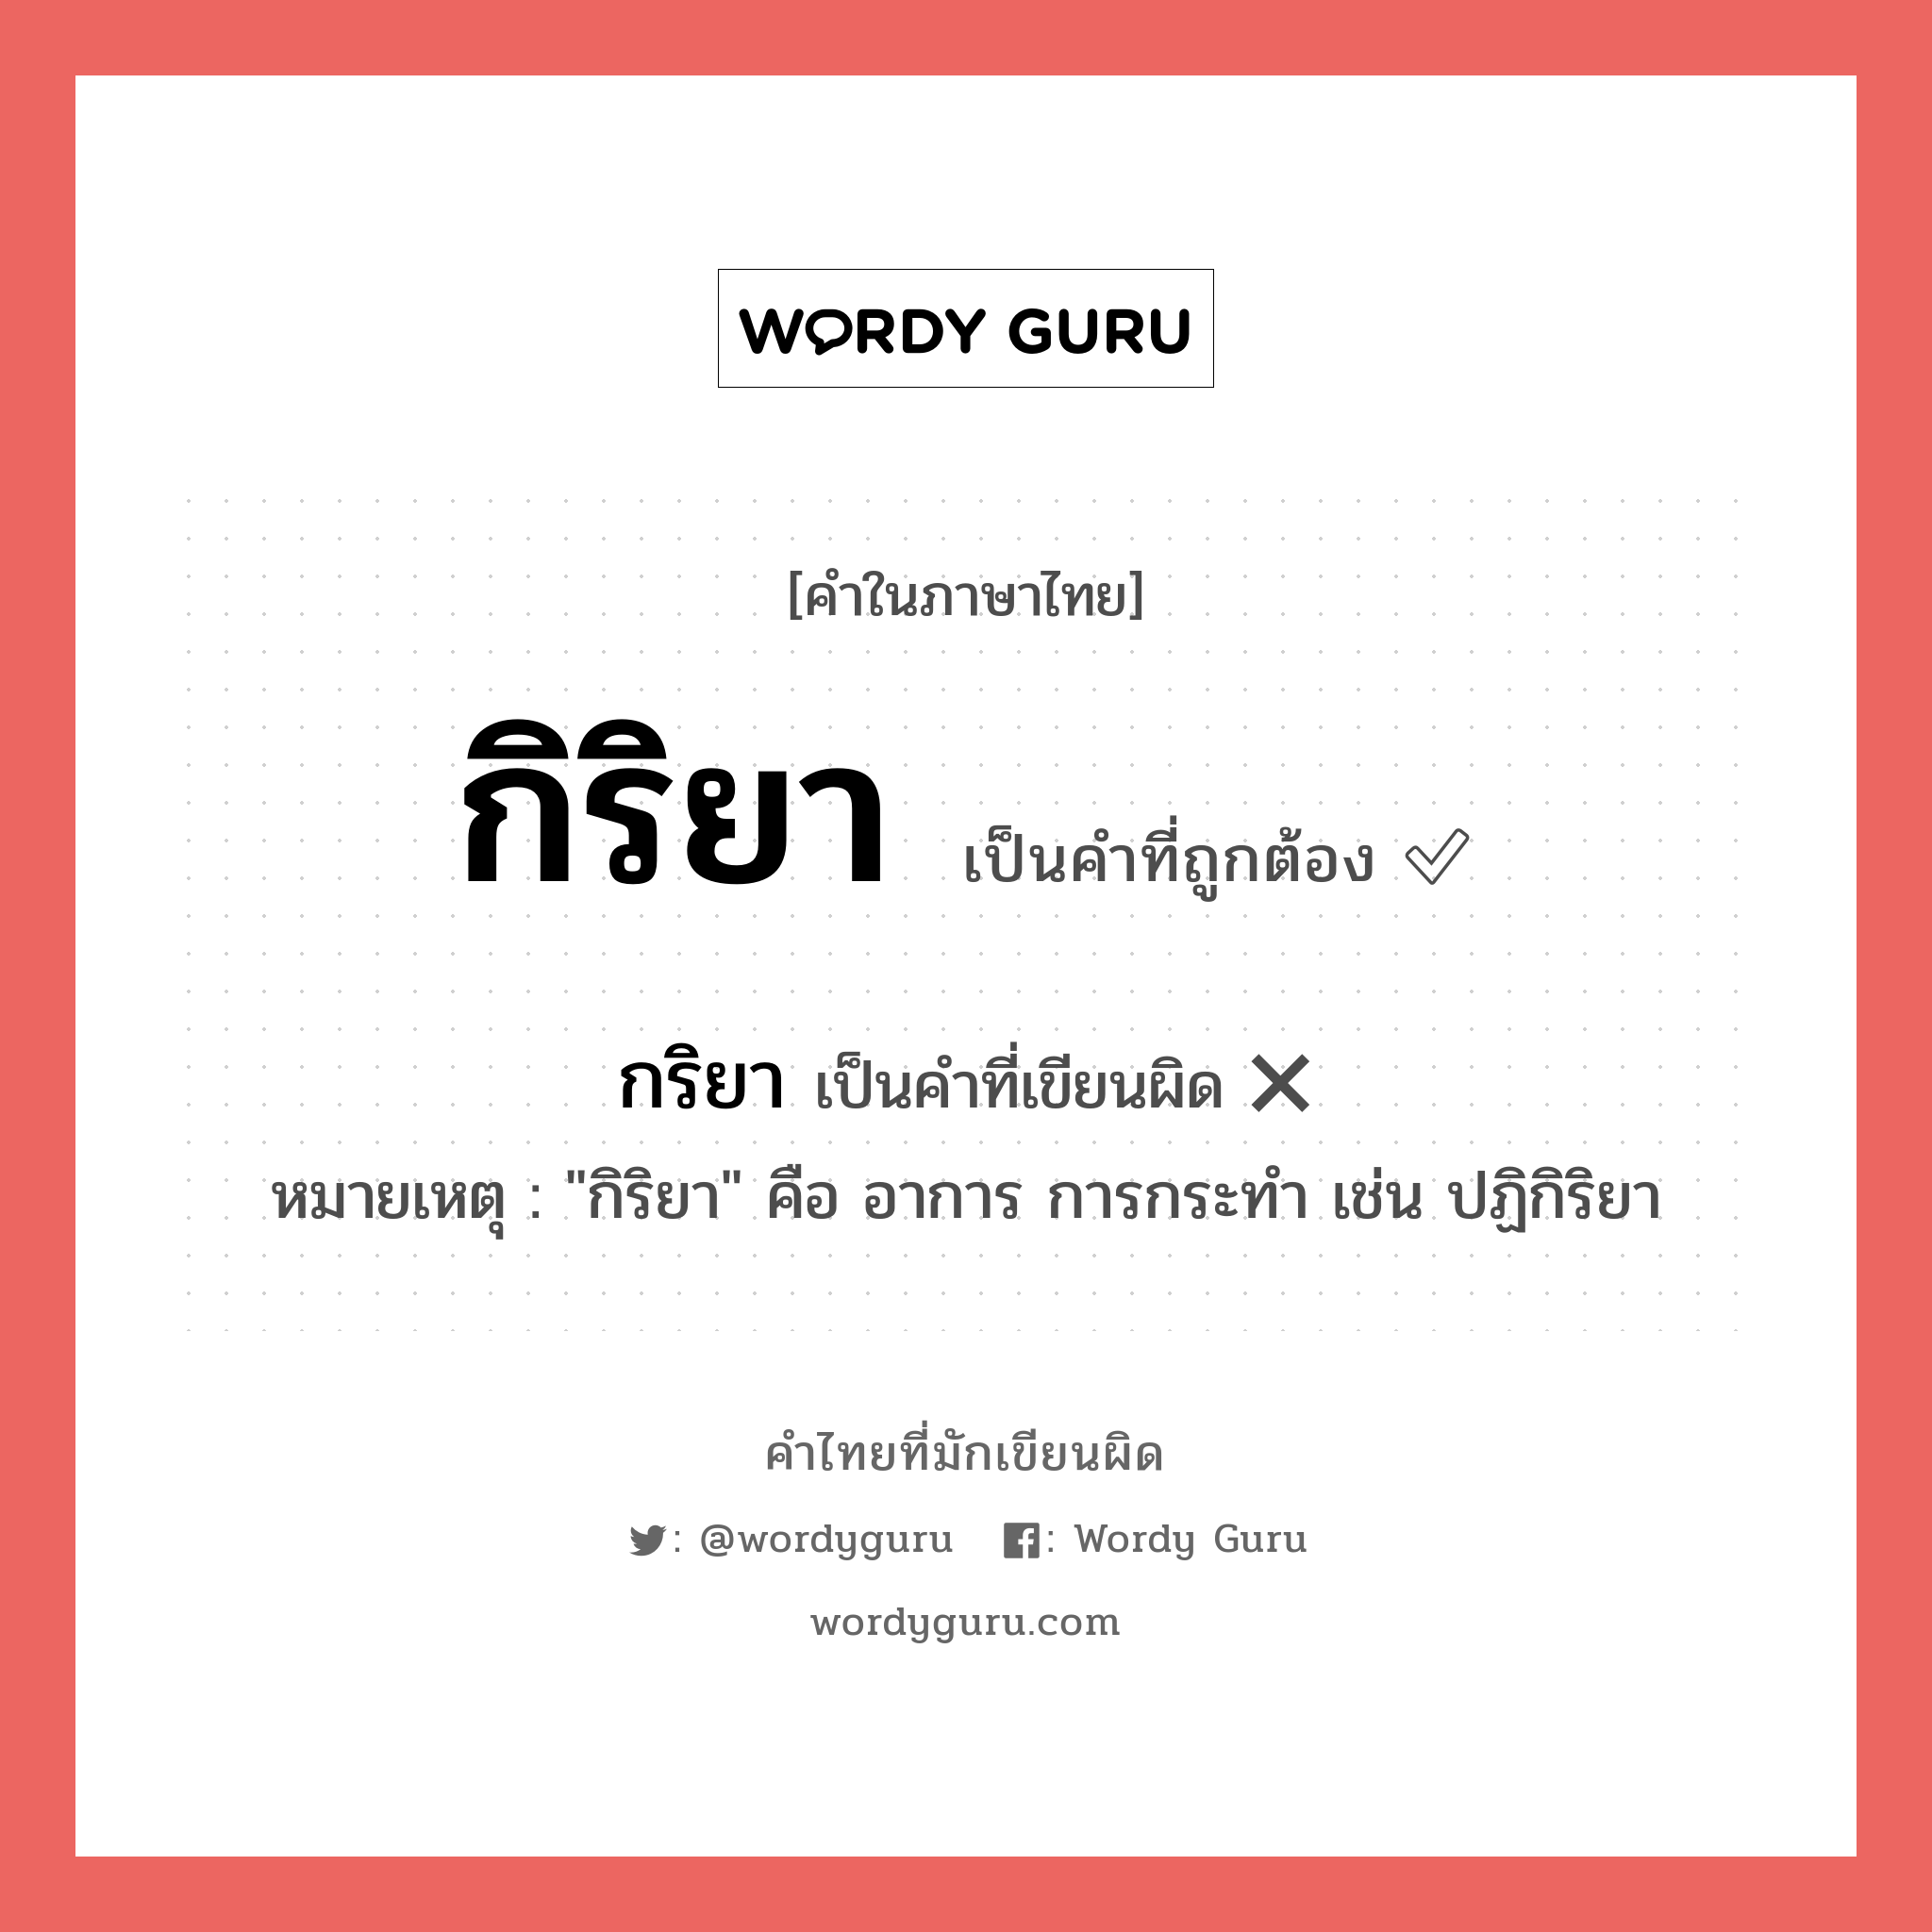 กิริยา หรือ กริยา คำไหนเขียนถูก?, คำในภาษาไทยที่มักเขียนผิด กริยา คำที่ผิด ❌ กิริยา หมายเหตุ "กิริยา" คือ อาการ การกระทำ เช่น ปฏิกิริยา